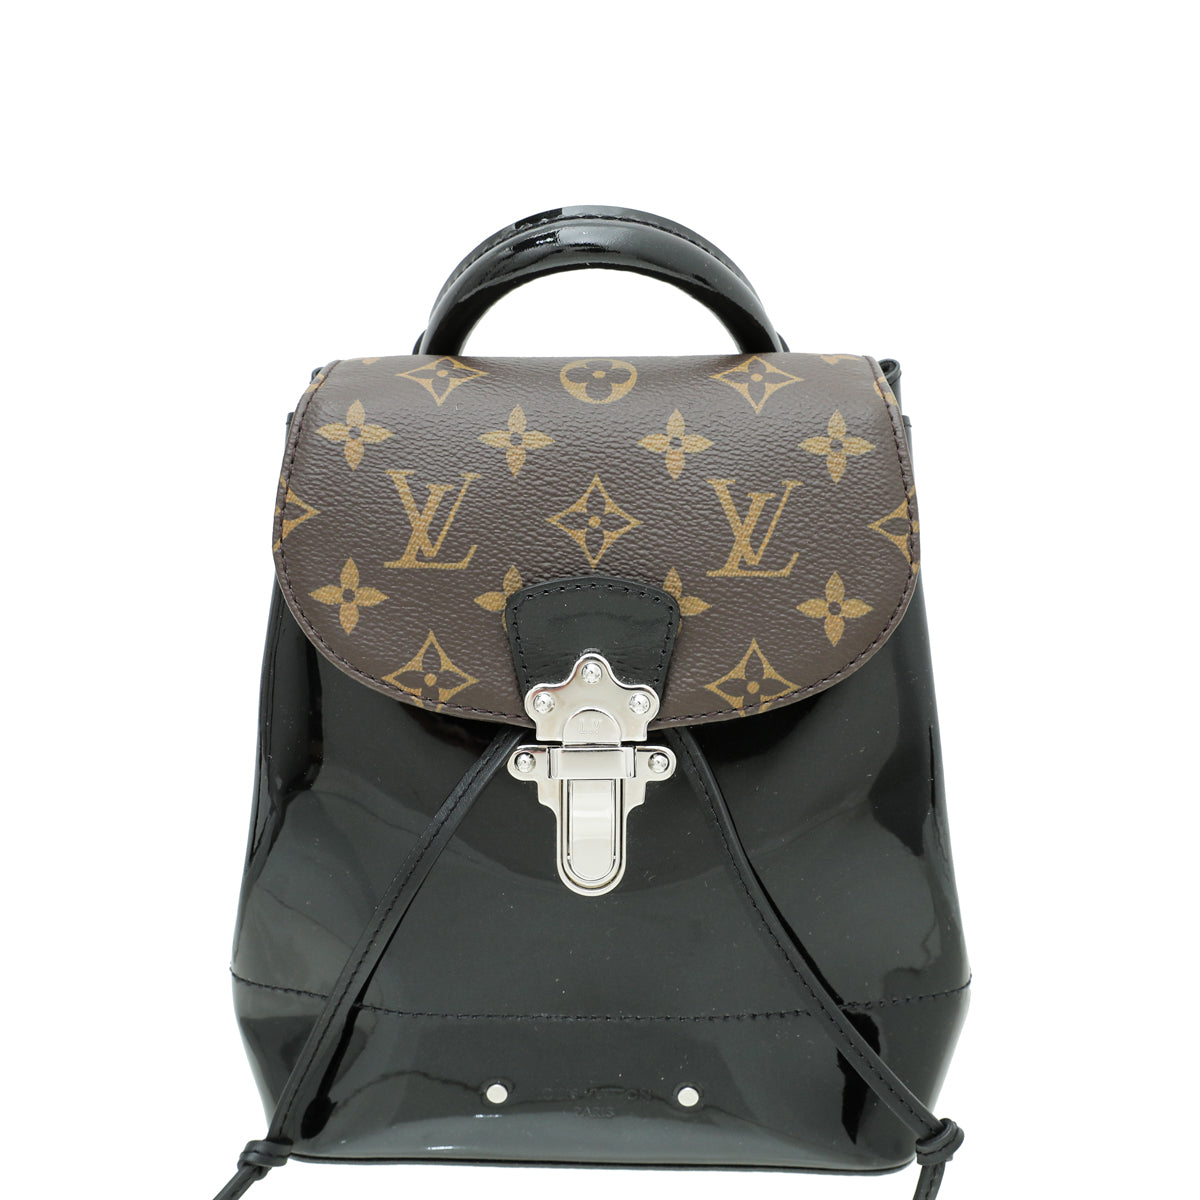 Pre-Owned Louis Vuitton Hot Springs Backpack 212296/2 | Rebag